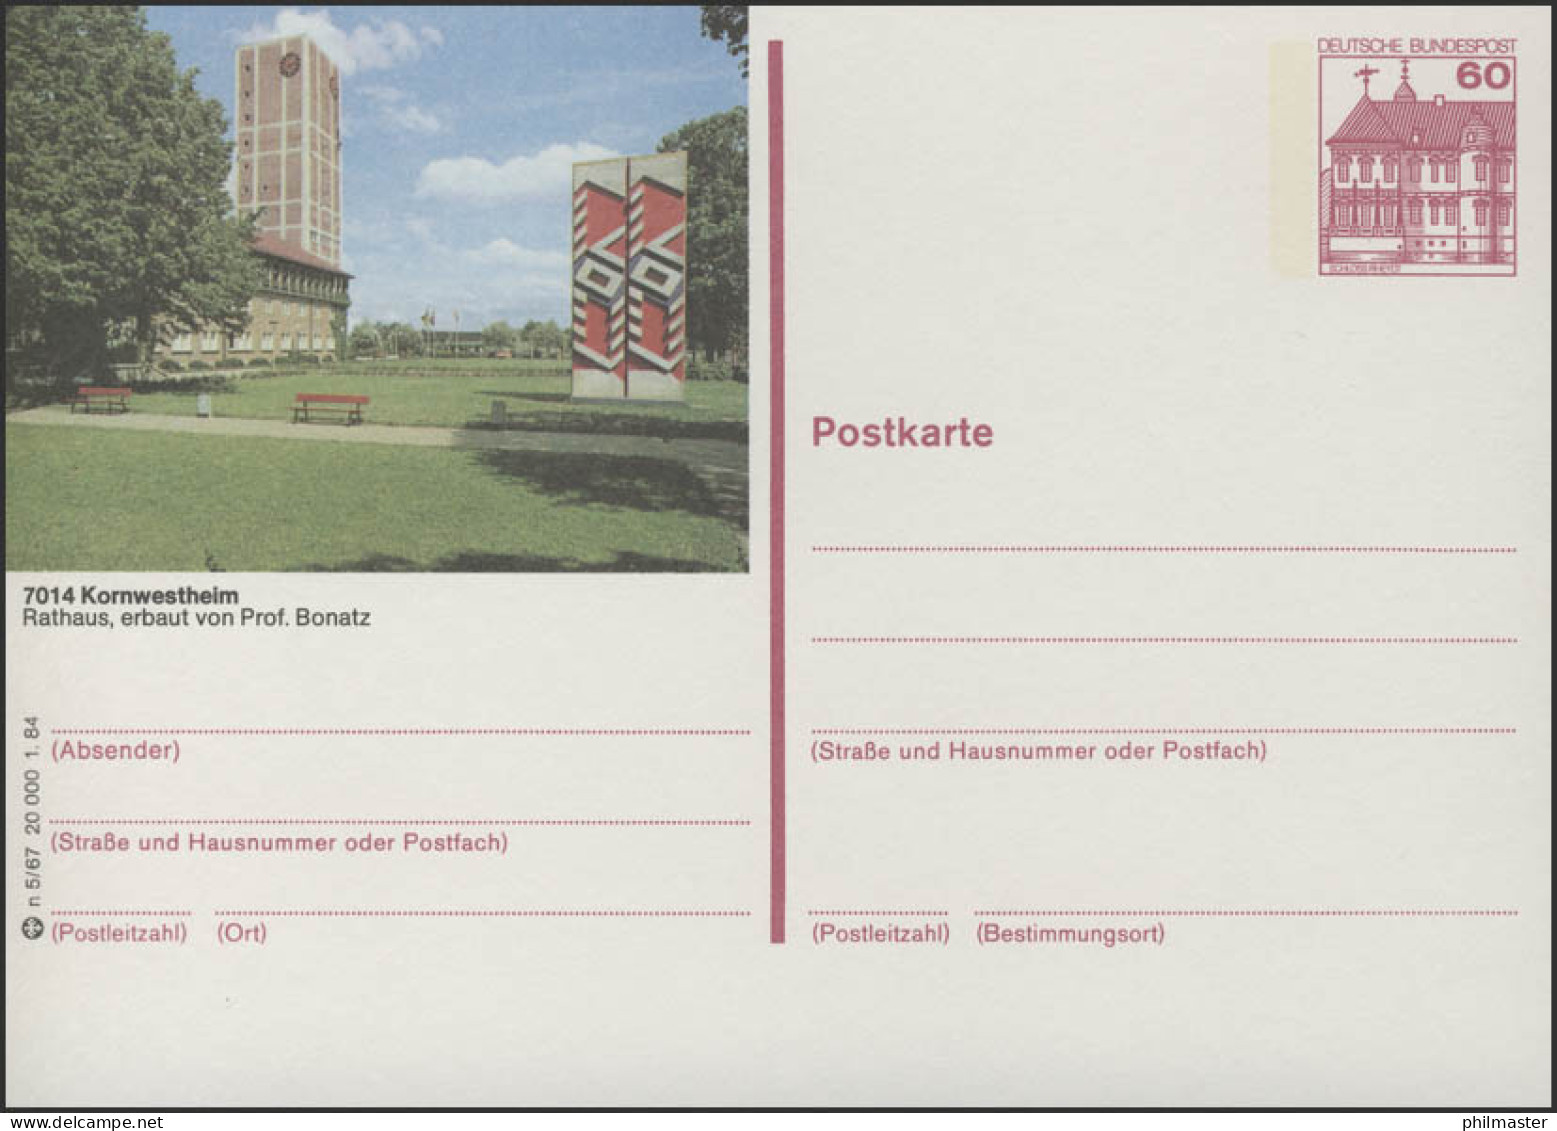 P138-n5/067 7014 Kornwestheim - Rathaus ** - Geïllustreerde Postkaarten - Ongebruikt